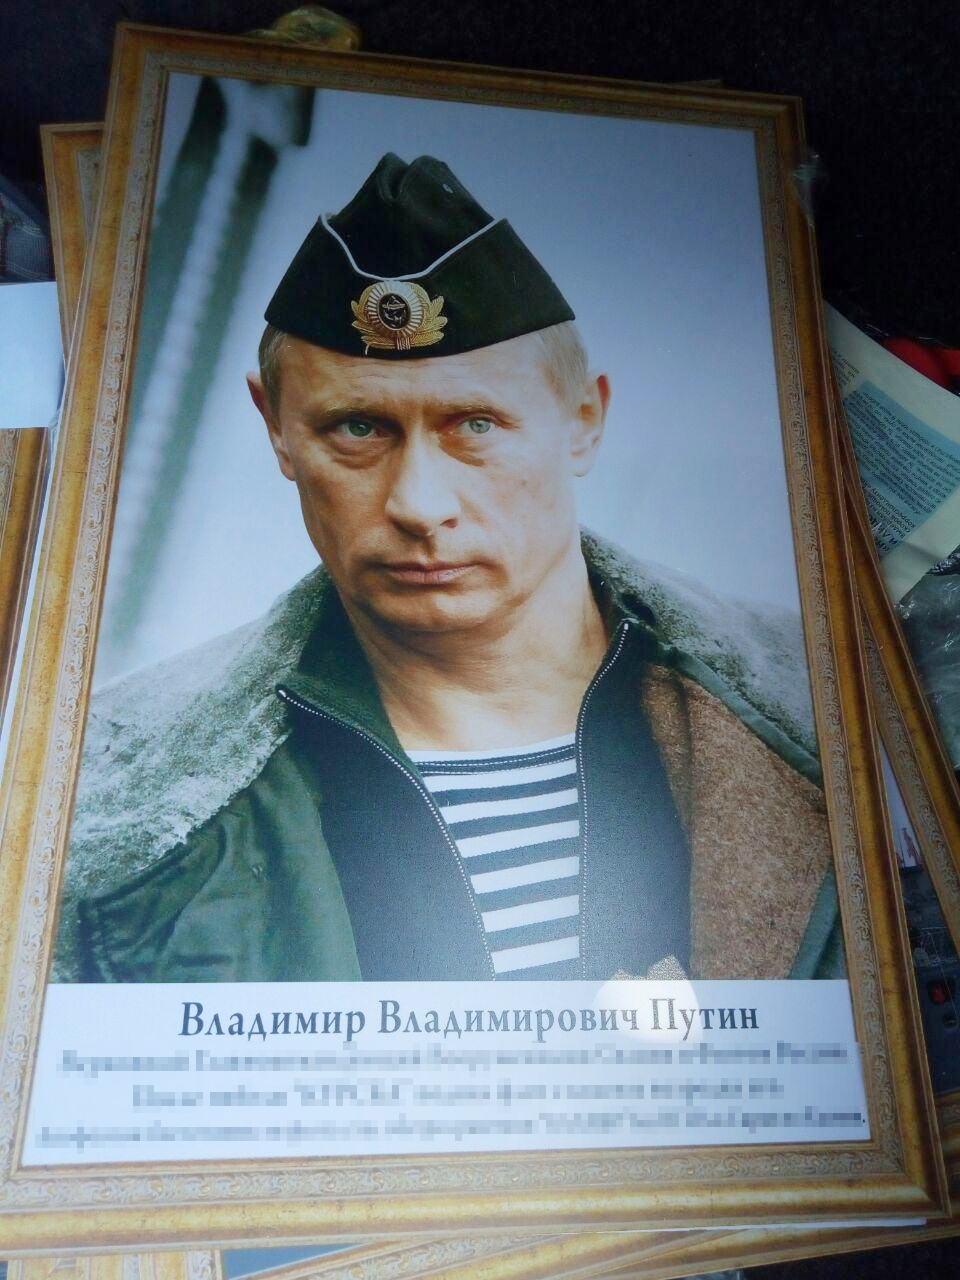 Украинец пытался провезти через границу портреты Путина и и предметы с символикой СССР. Фото: Госпогранслужба